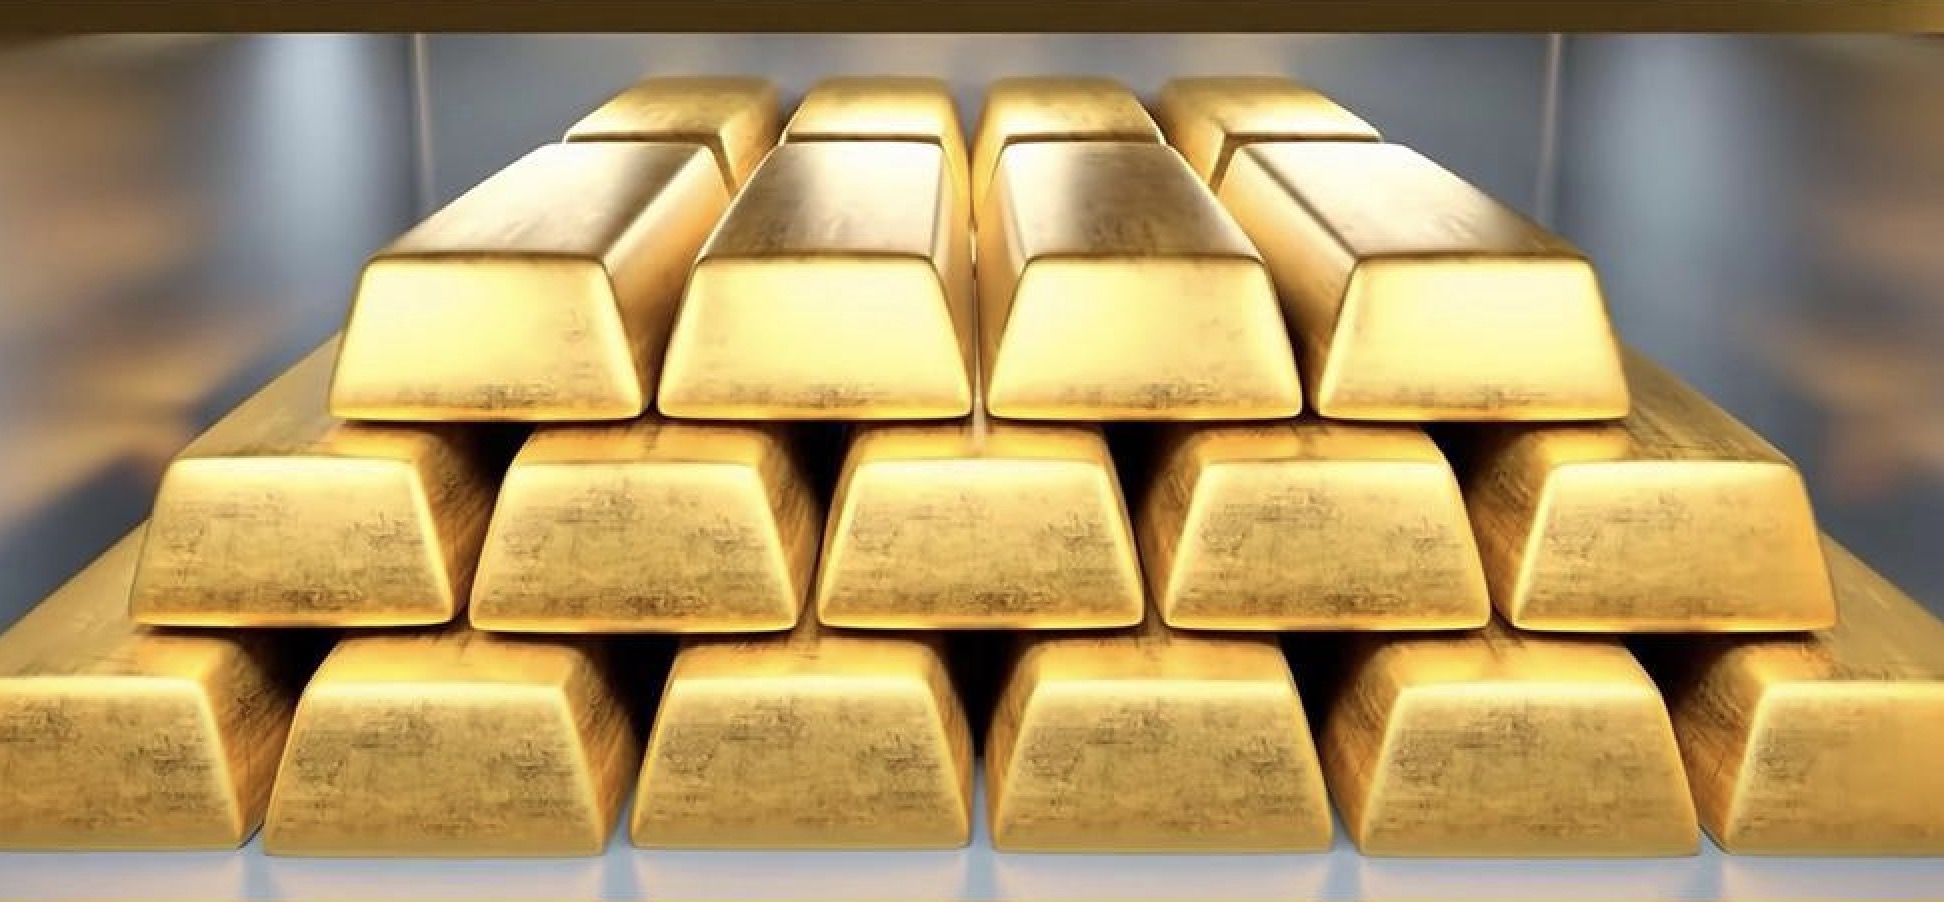 Pengingat perdagangan emas: Pemilu Perancis mengganggu, harga emas berada di bawah sedikit tekanan, dan kenaikan masih mengarah ke 2450